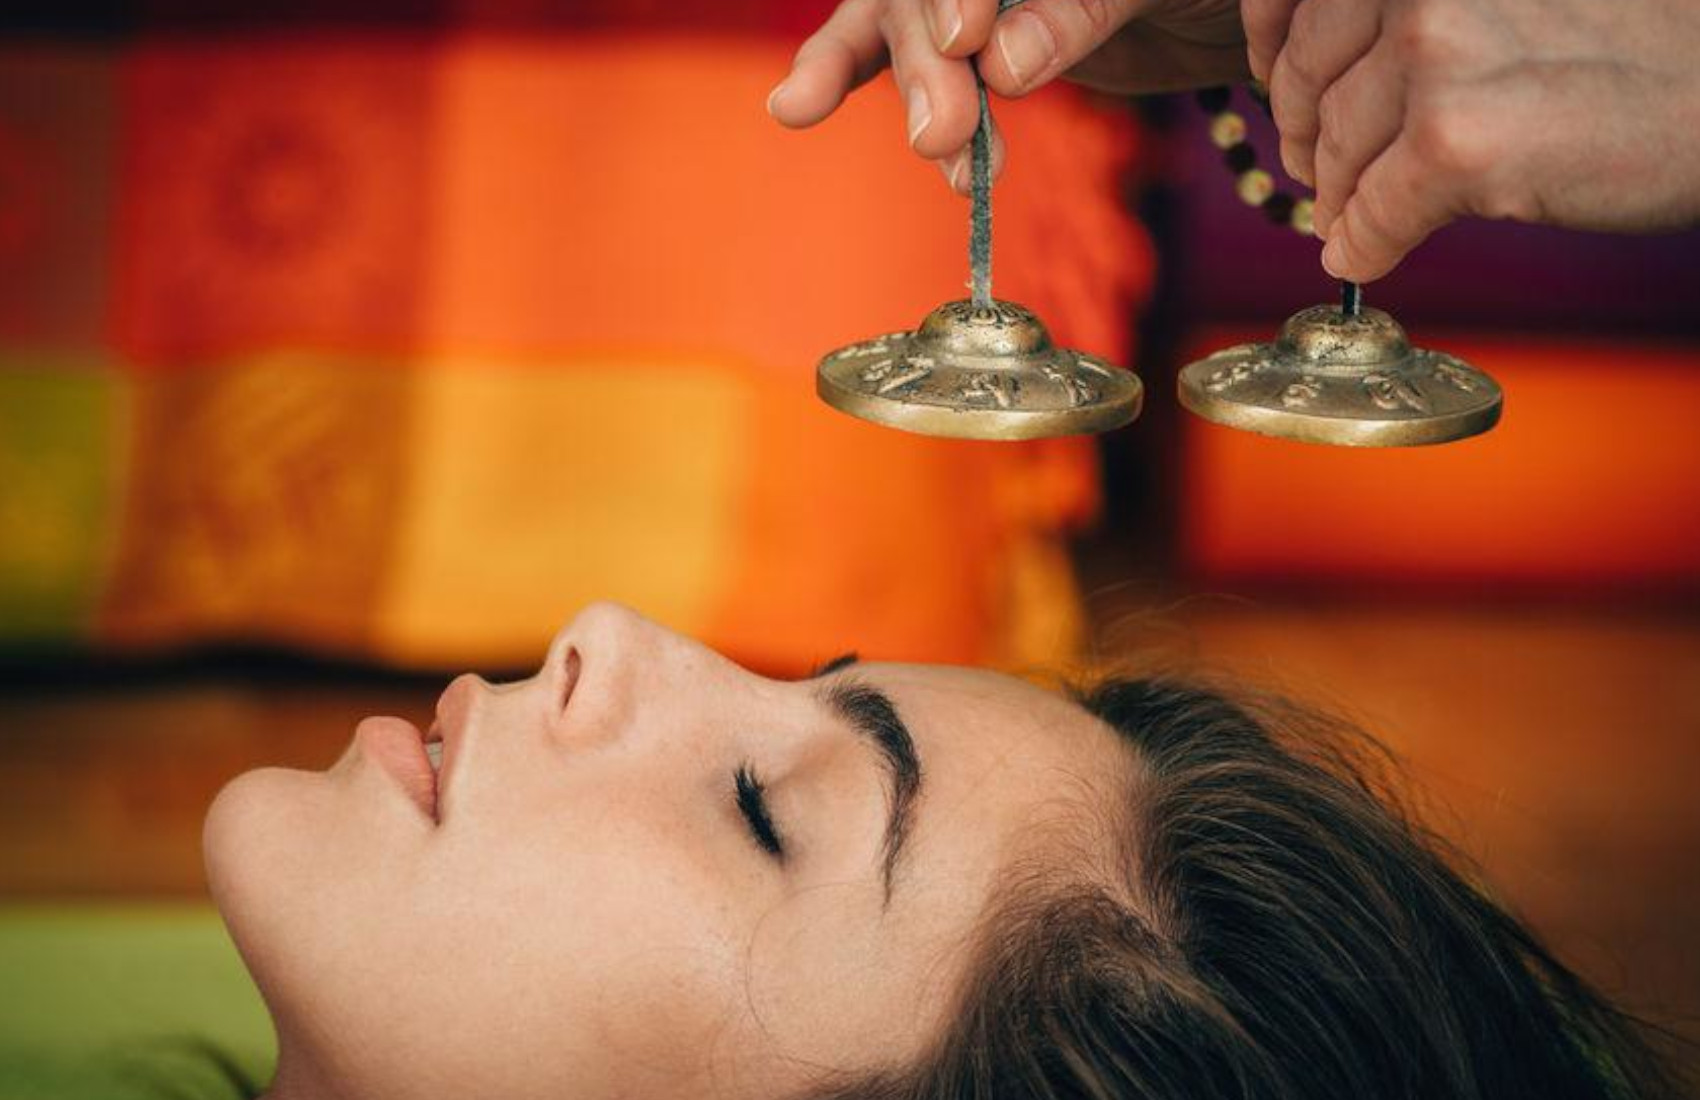 Lakshmi Ananda - Massaggio sonoro con le campane tibetane